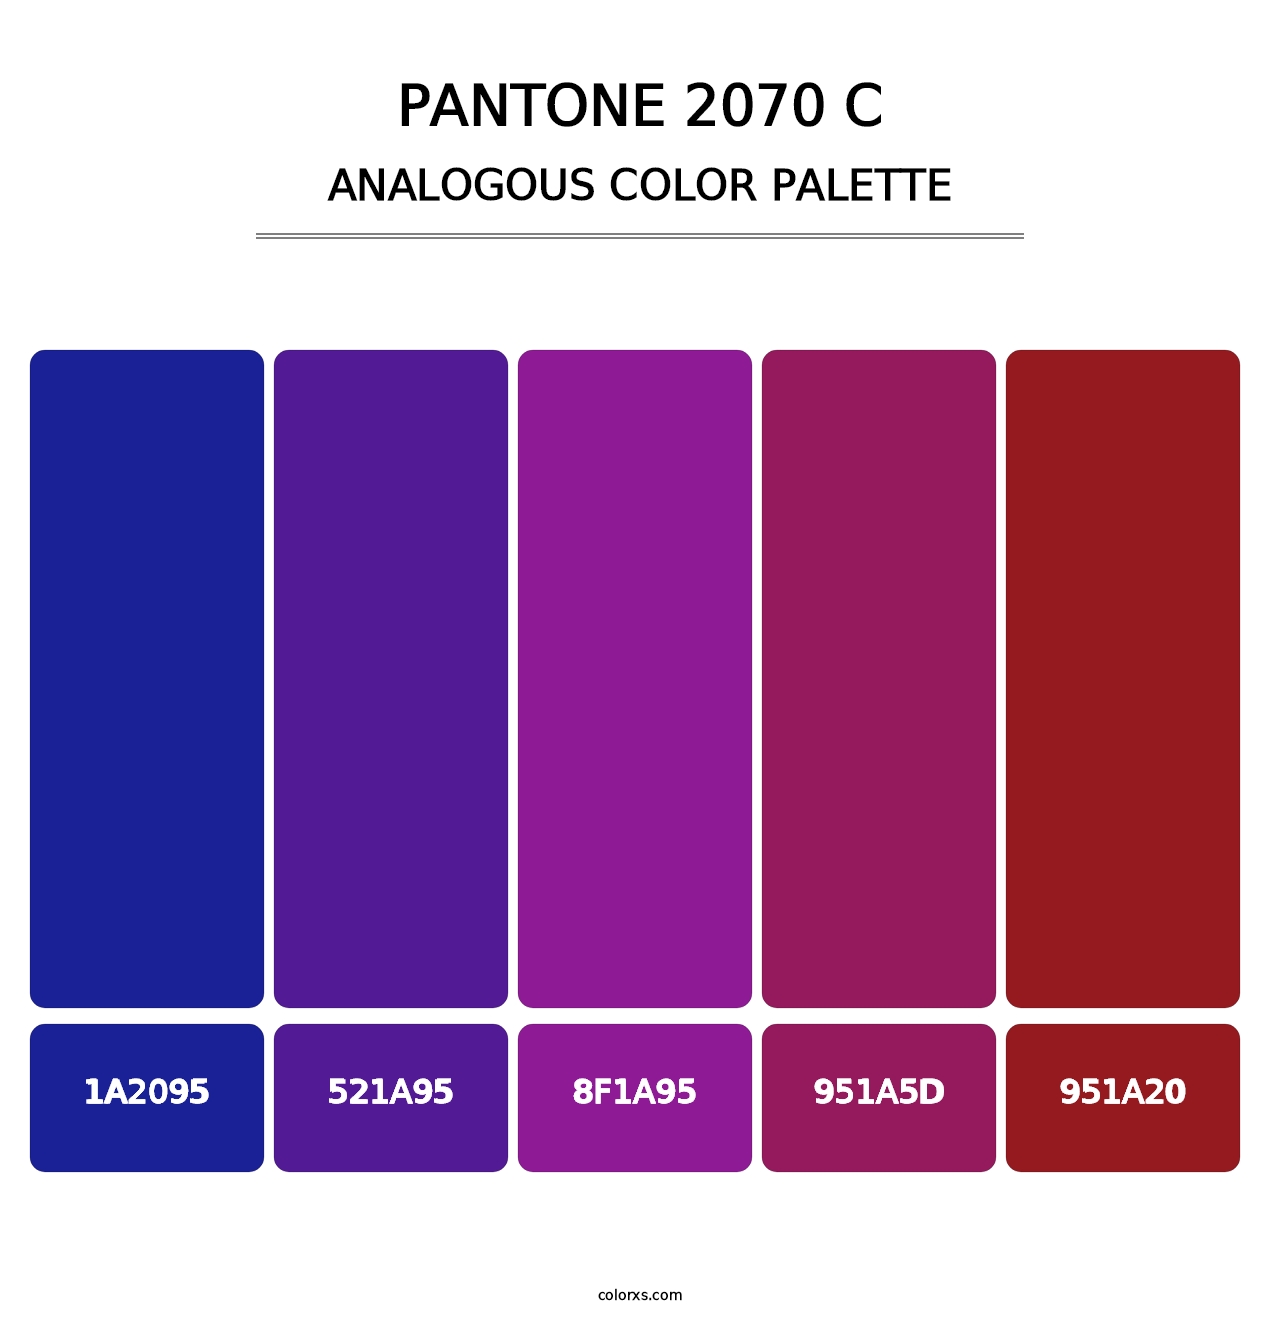 PANTONE 2070 C - Analogous Color Palette